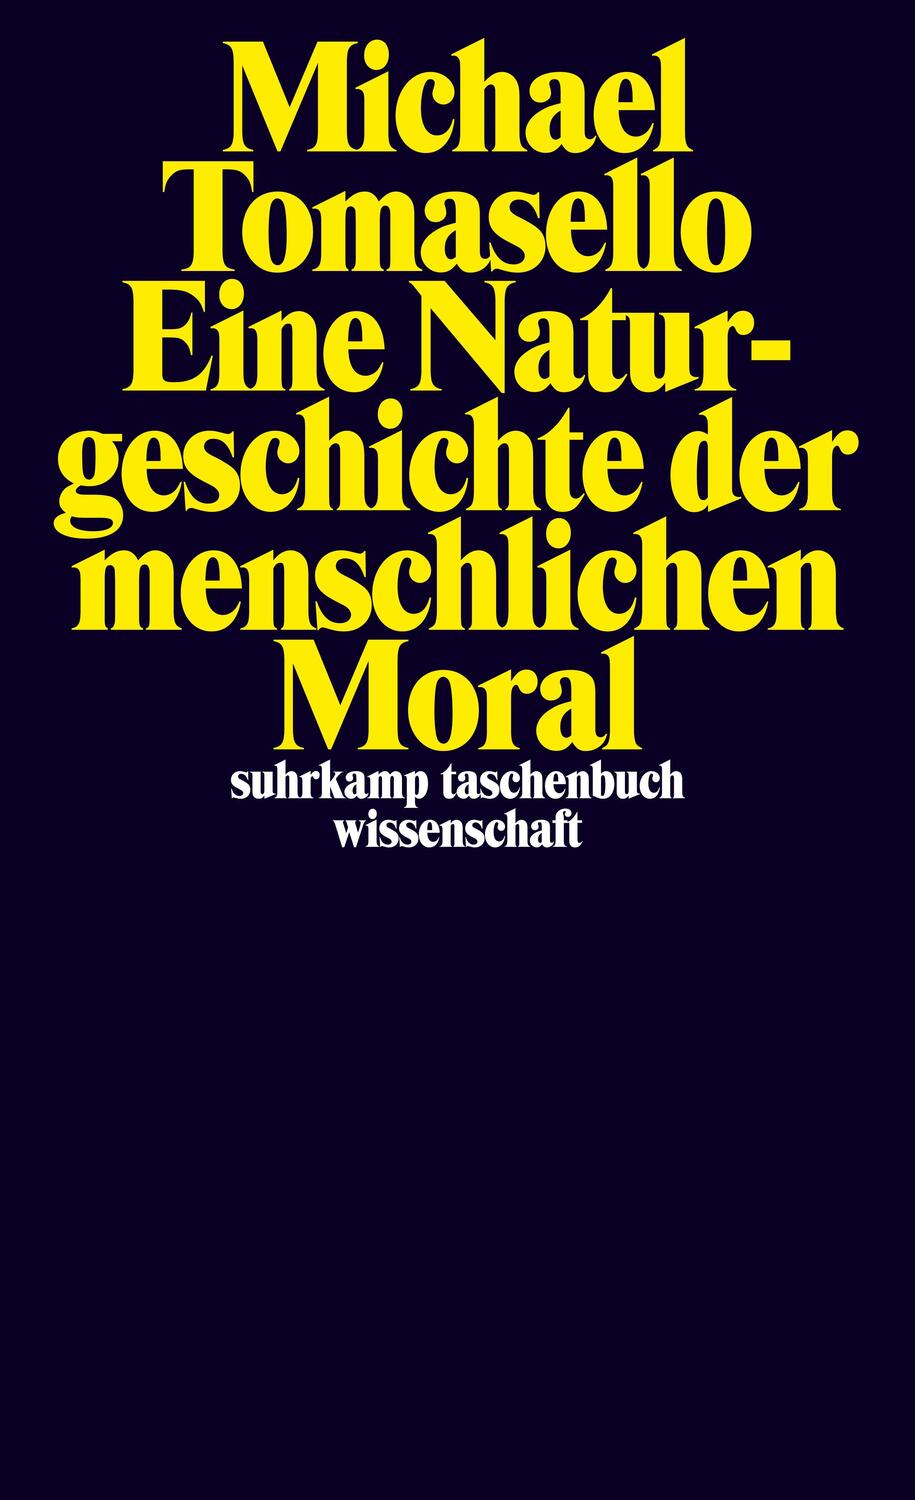 Eine Naturgeschichte der menschlichen Moral - Tomasello, Michael